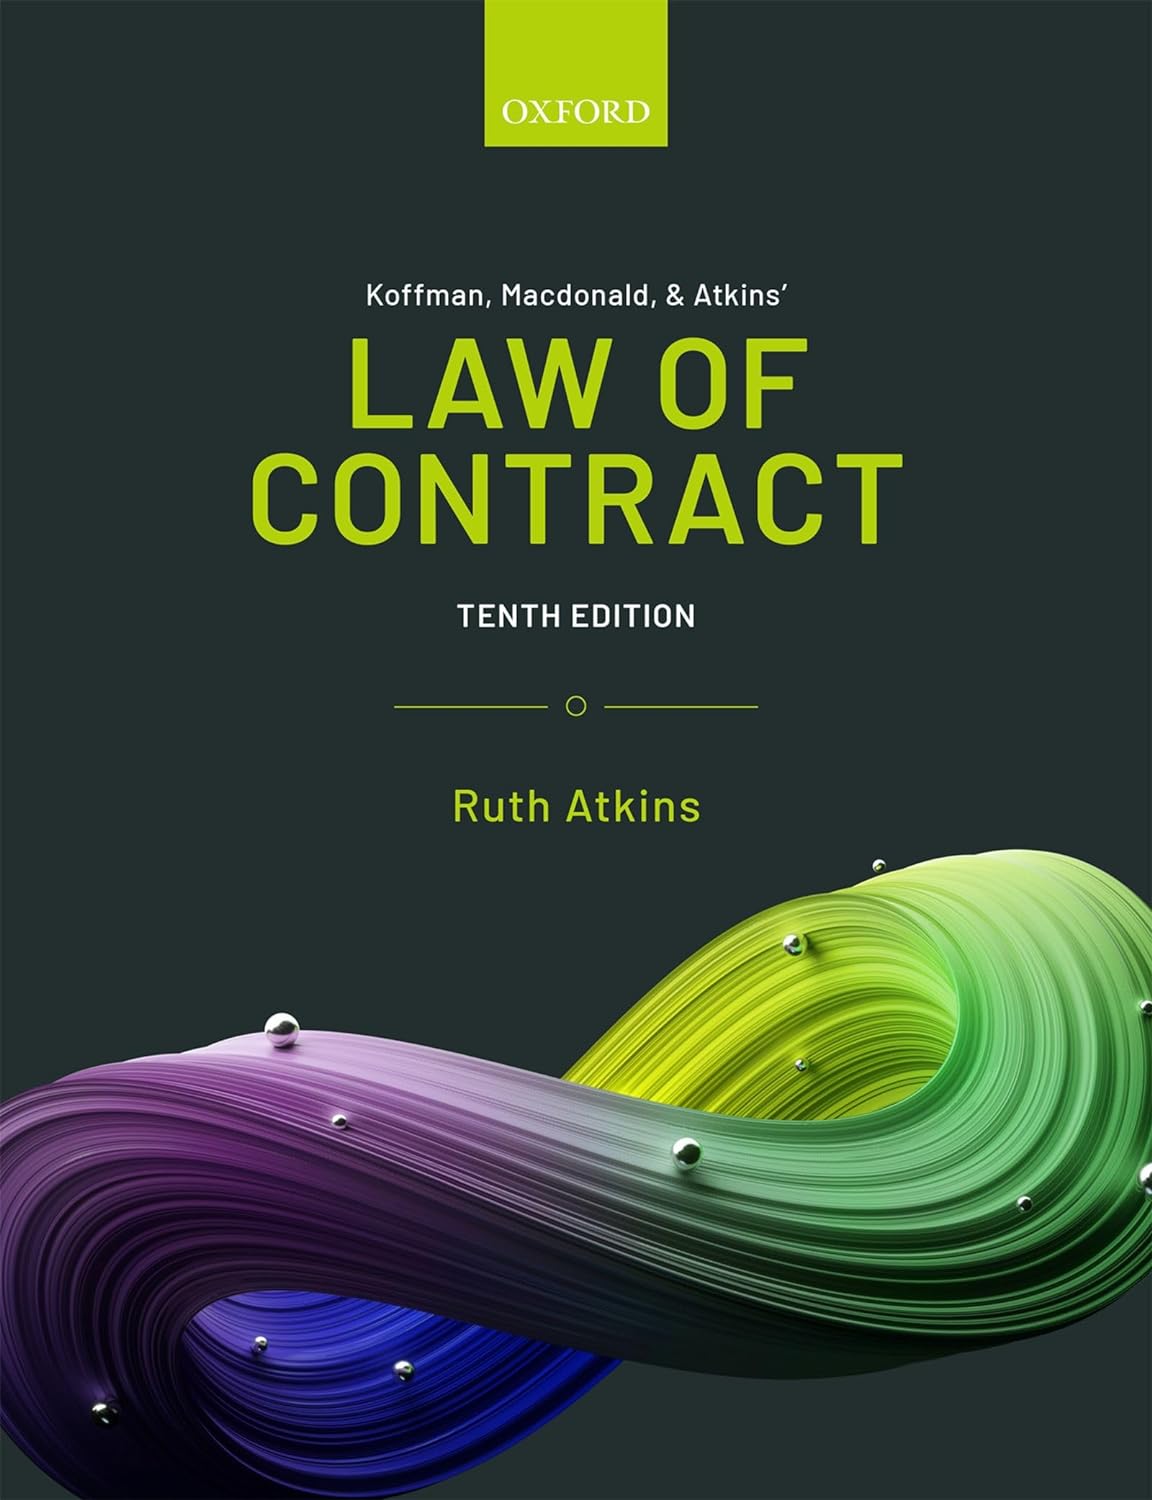 Koffman, Legge dei contratti di Macdonald e Atkins 10a edizione